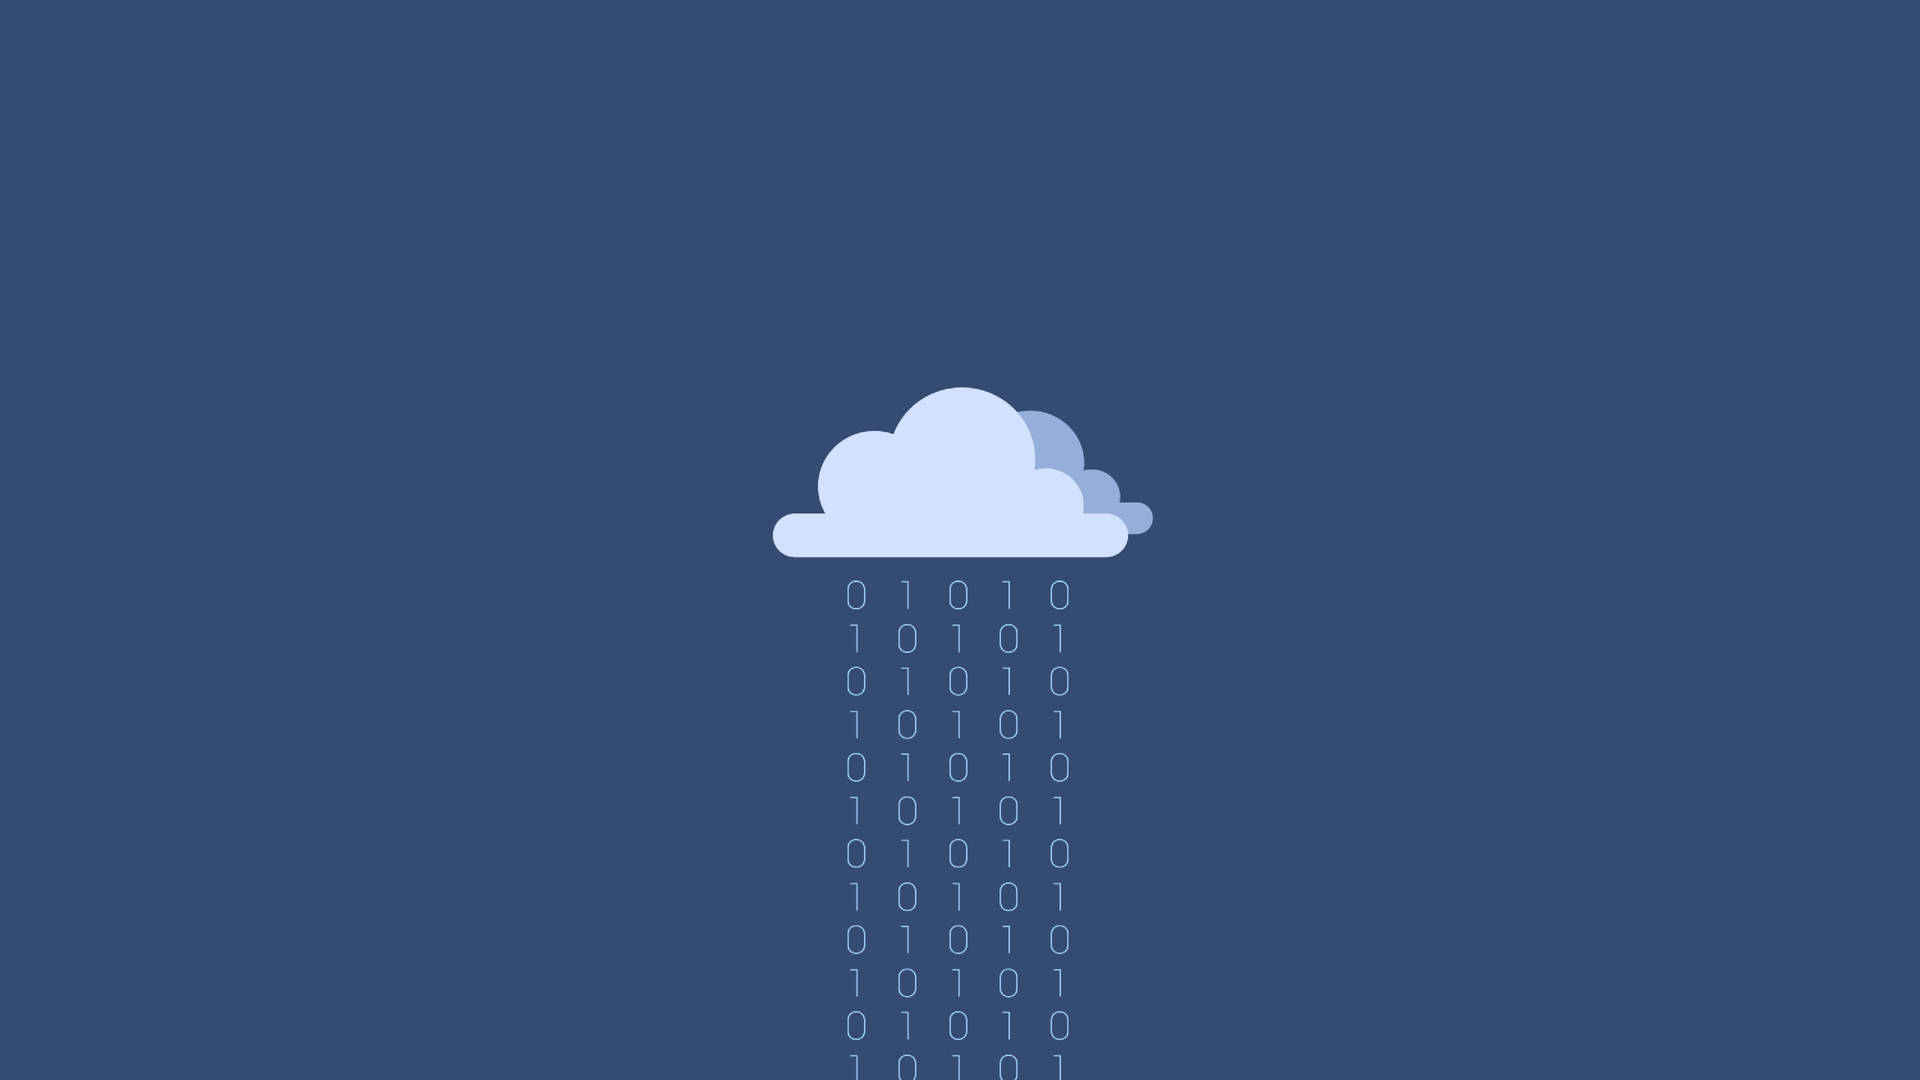 Raining Binary Programming Code Background